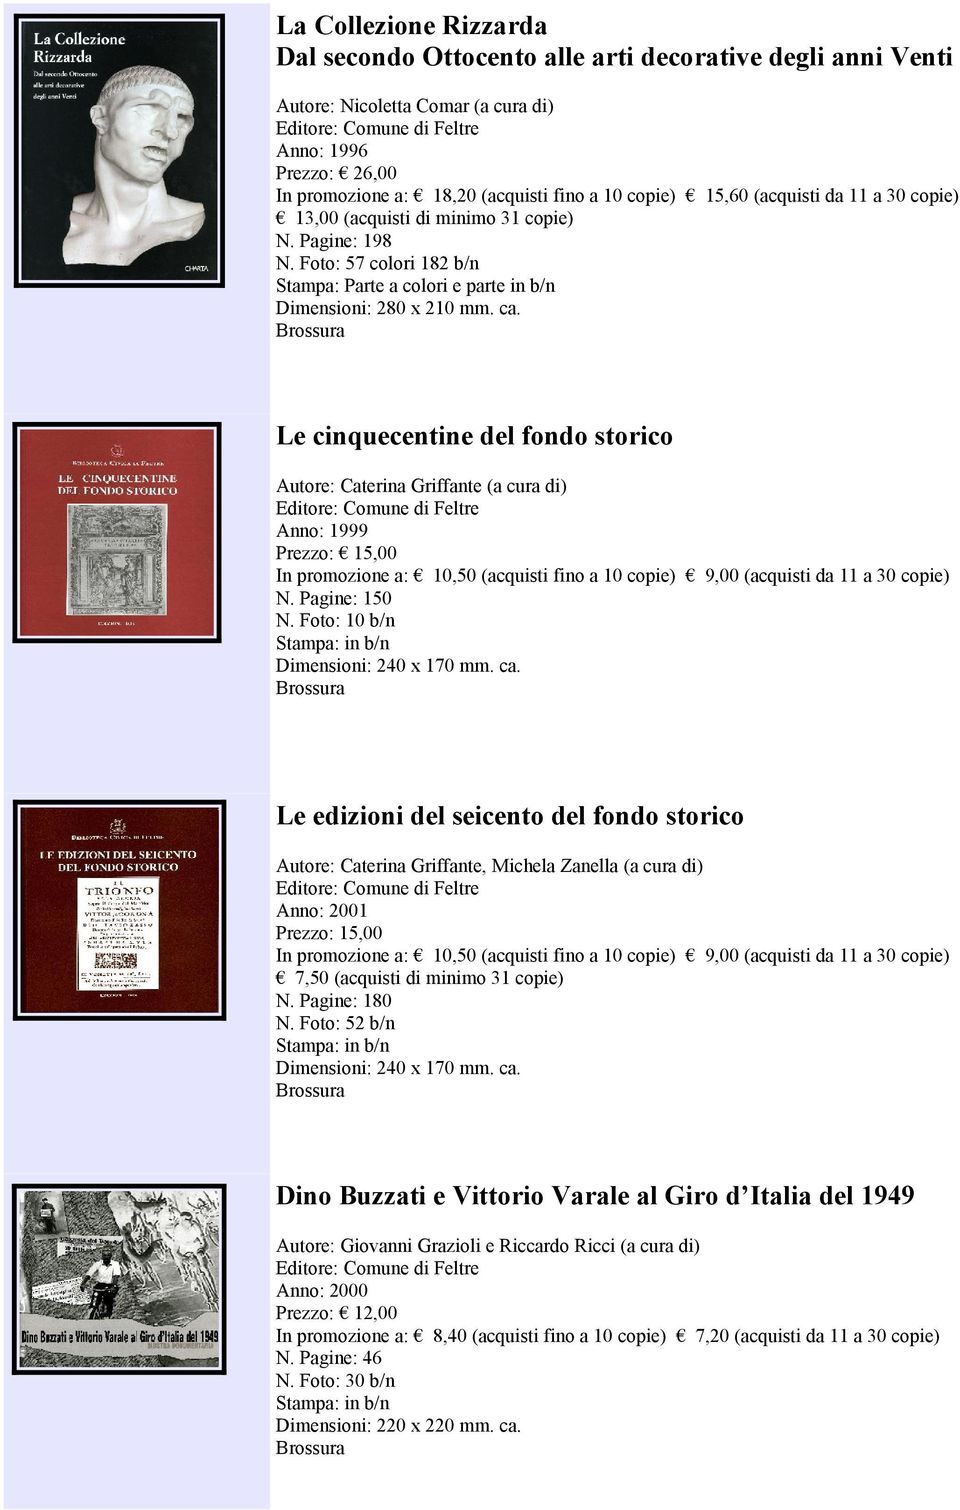 Le cinquecentine del fondo storico Autore: Caterina Griffante (a cura di) Anno: 1999 N. Pagine: 150 N. Foto: 10 b/n Dimensioni: 240 x 170 mm. ca.